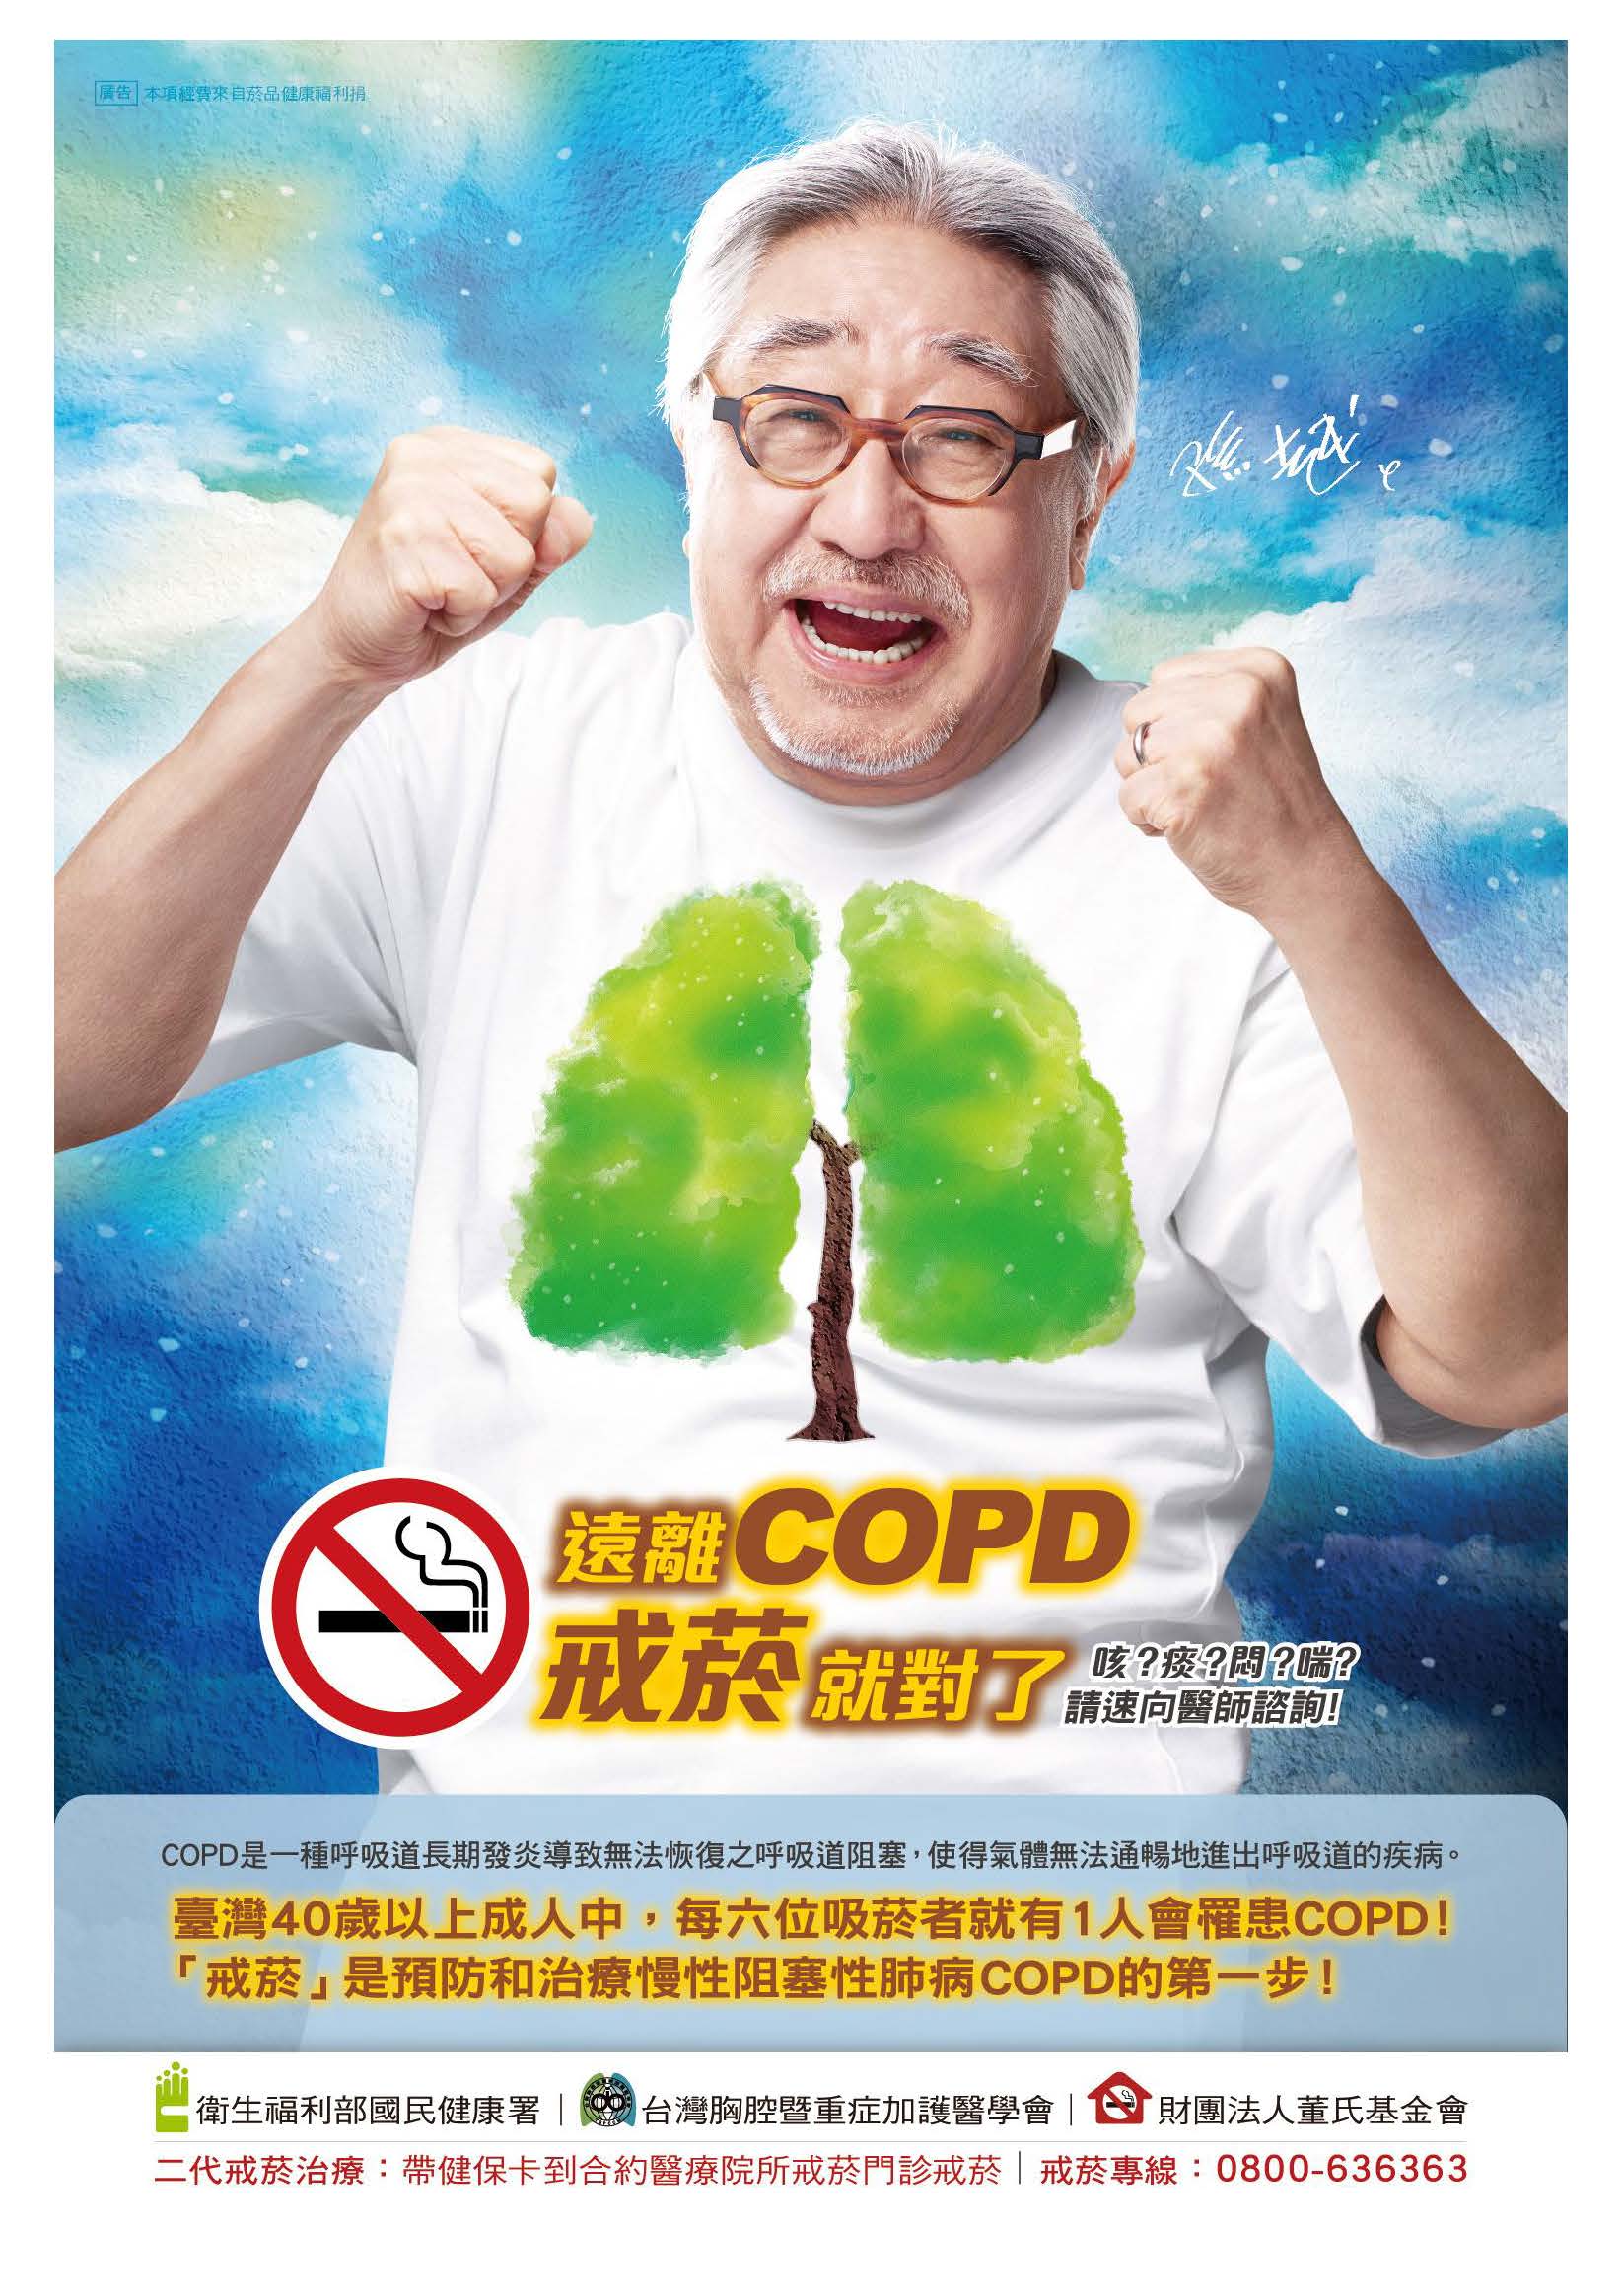 14.遠離COPD戒菸就對了